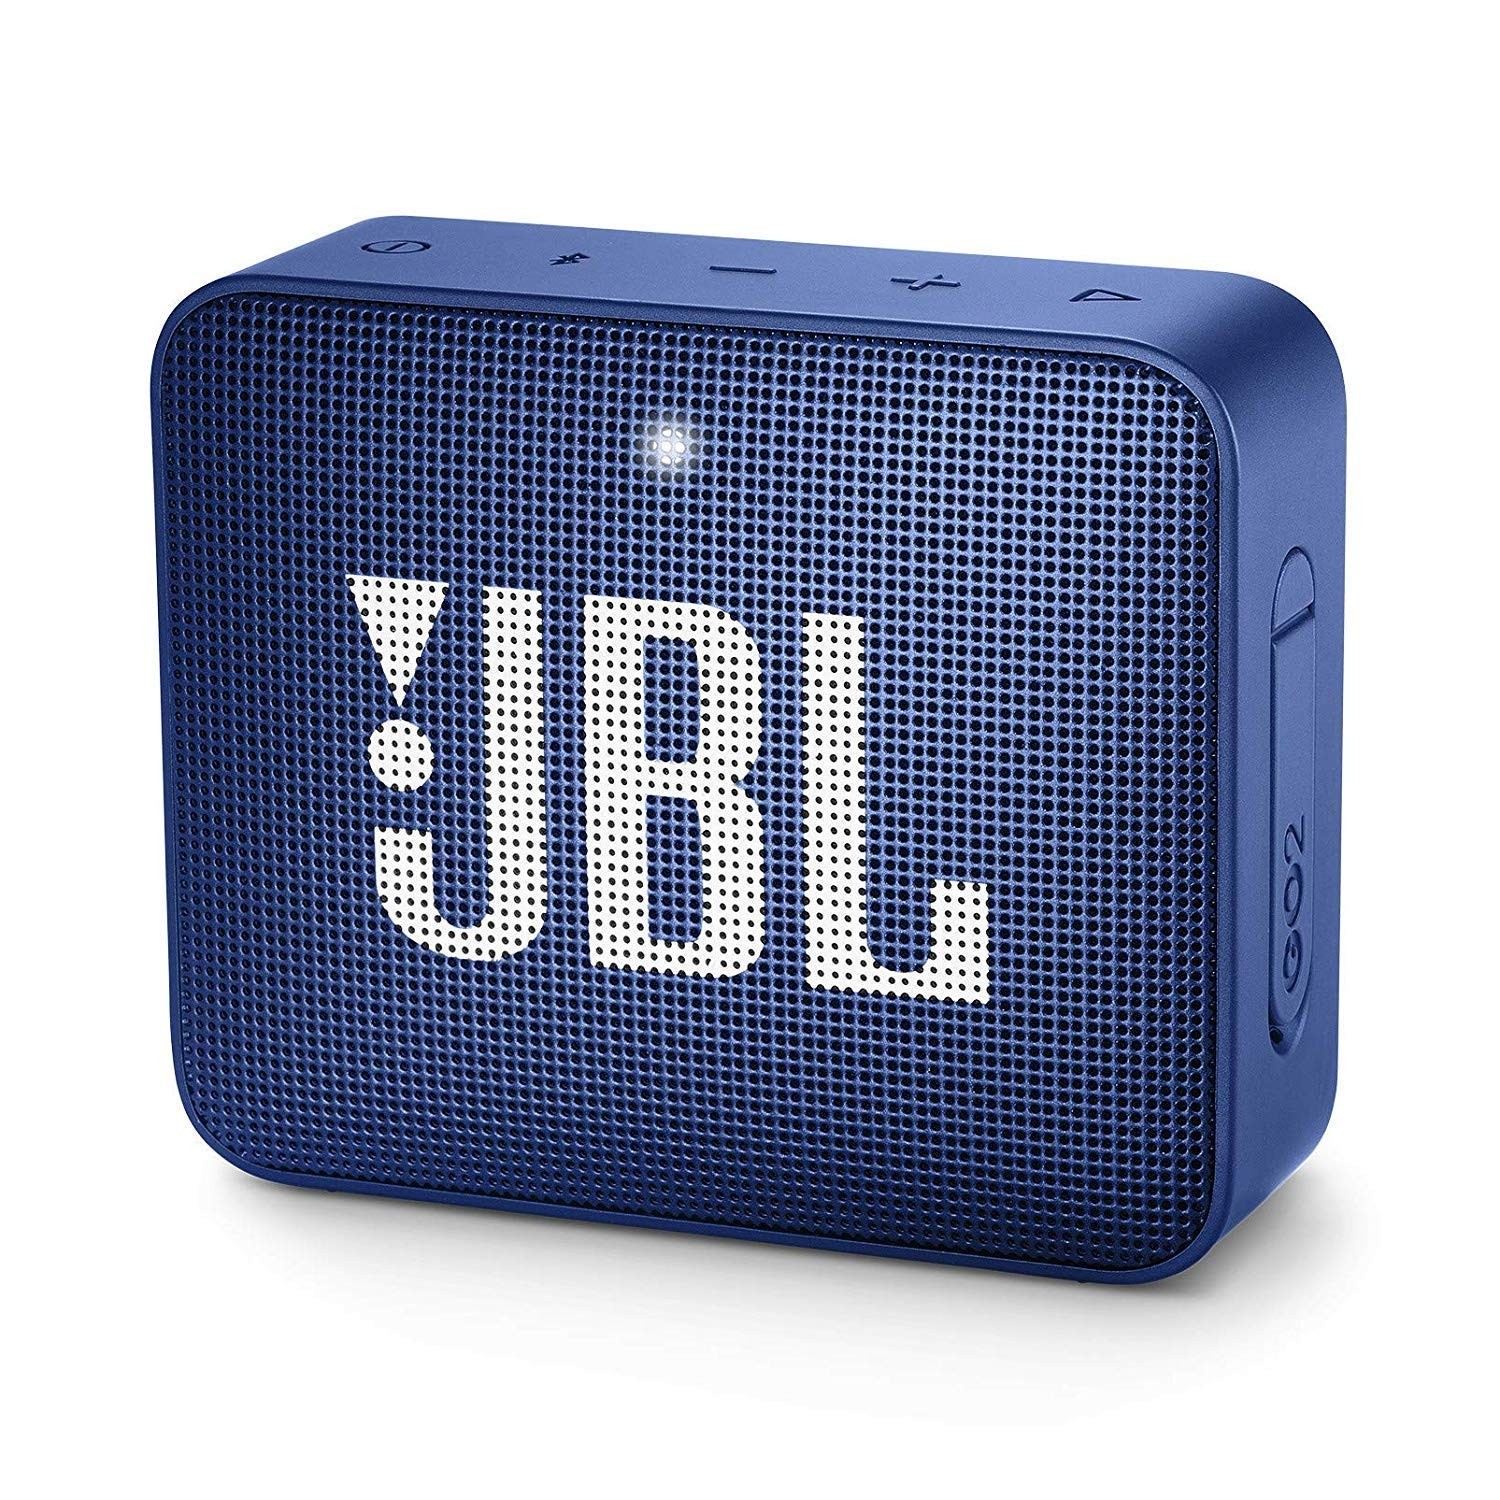 Caixa de Som Bluetooth - 1.0 - JBL GO 2 (À prova de água) - Azul - JBLGO2BLUBR